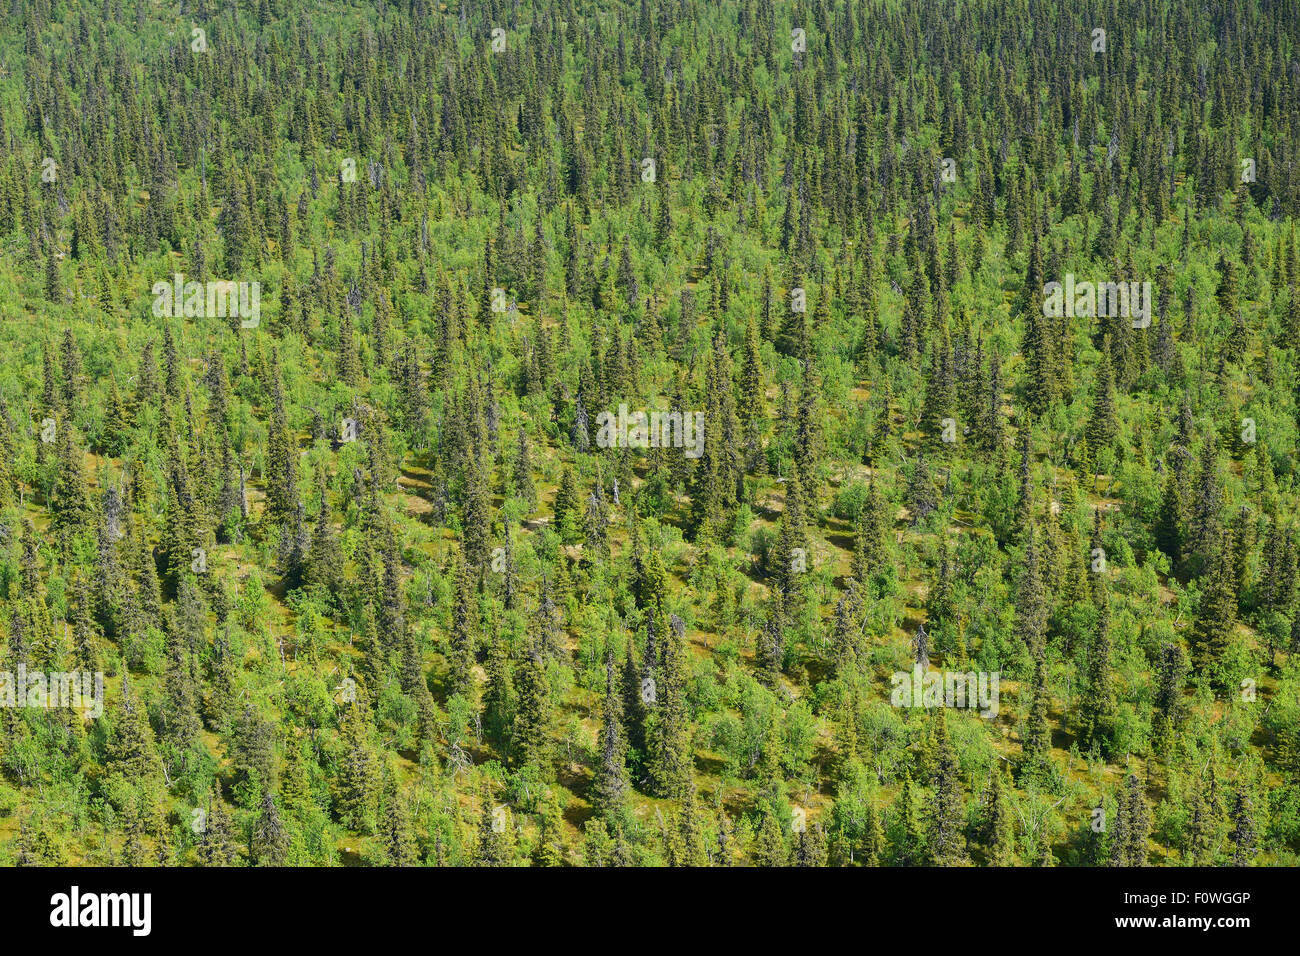 Vue aérienne de la forêt boréale de la taïga, Sjaunja Zone de protection des oiseaux, une plus grande zone de Laponia Rewilding, Laponie, Norrbotten, Suède, juin 2013. Banque D'Images